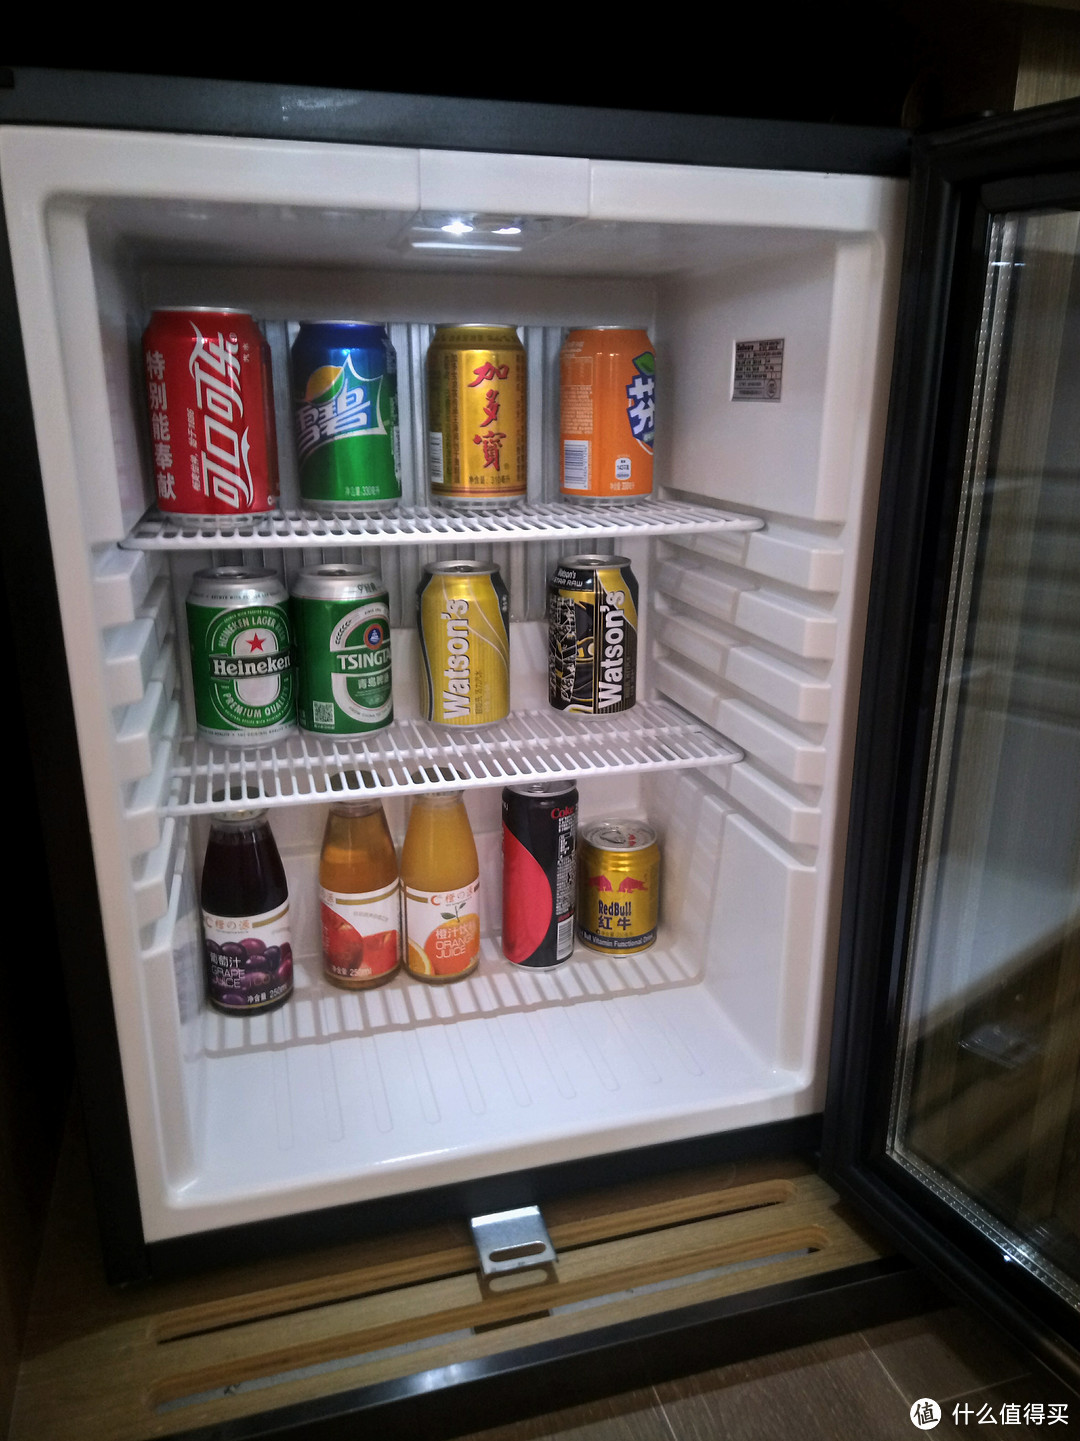 冰箱什么的的设施当然是有，里面的饮料当然也是非常贵。